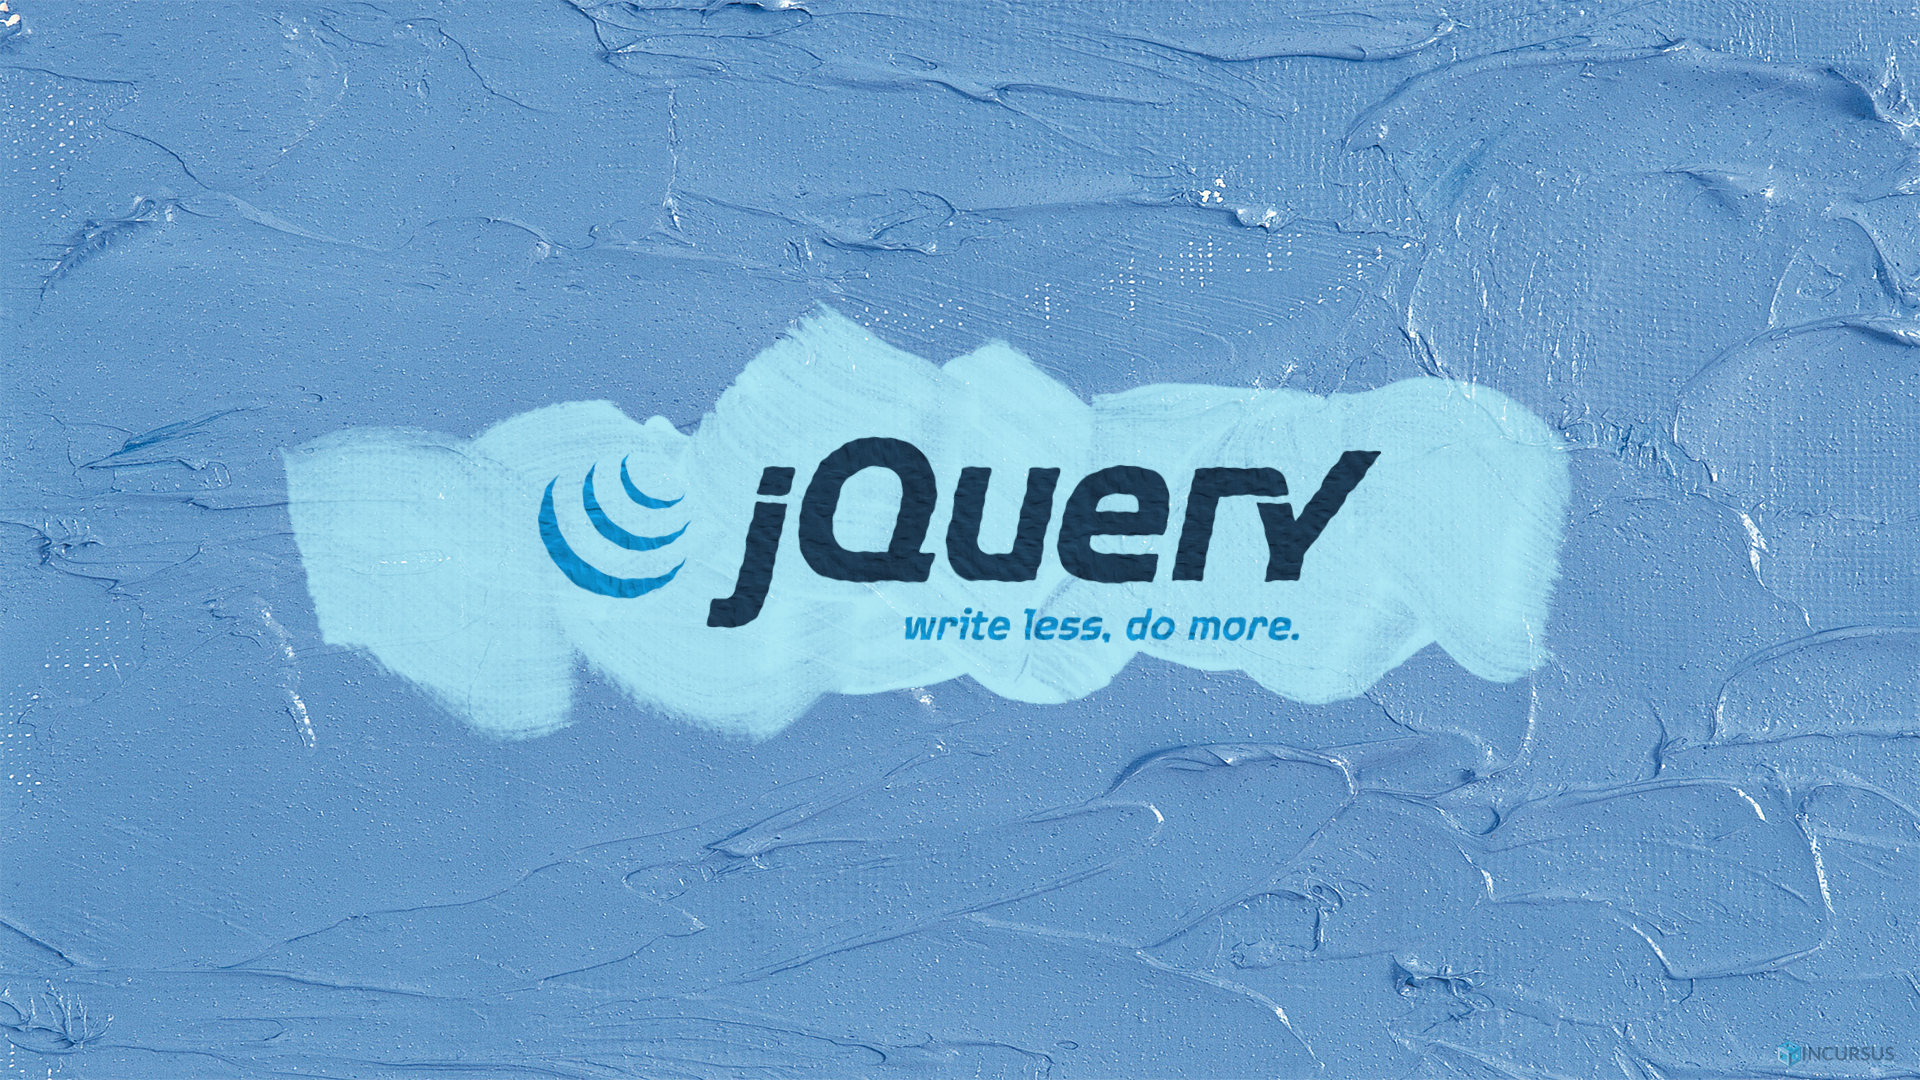 jQuery介绍、jQuery导入方式、基本使用 | 菜鸟教程网